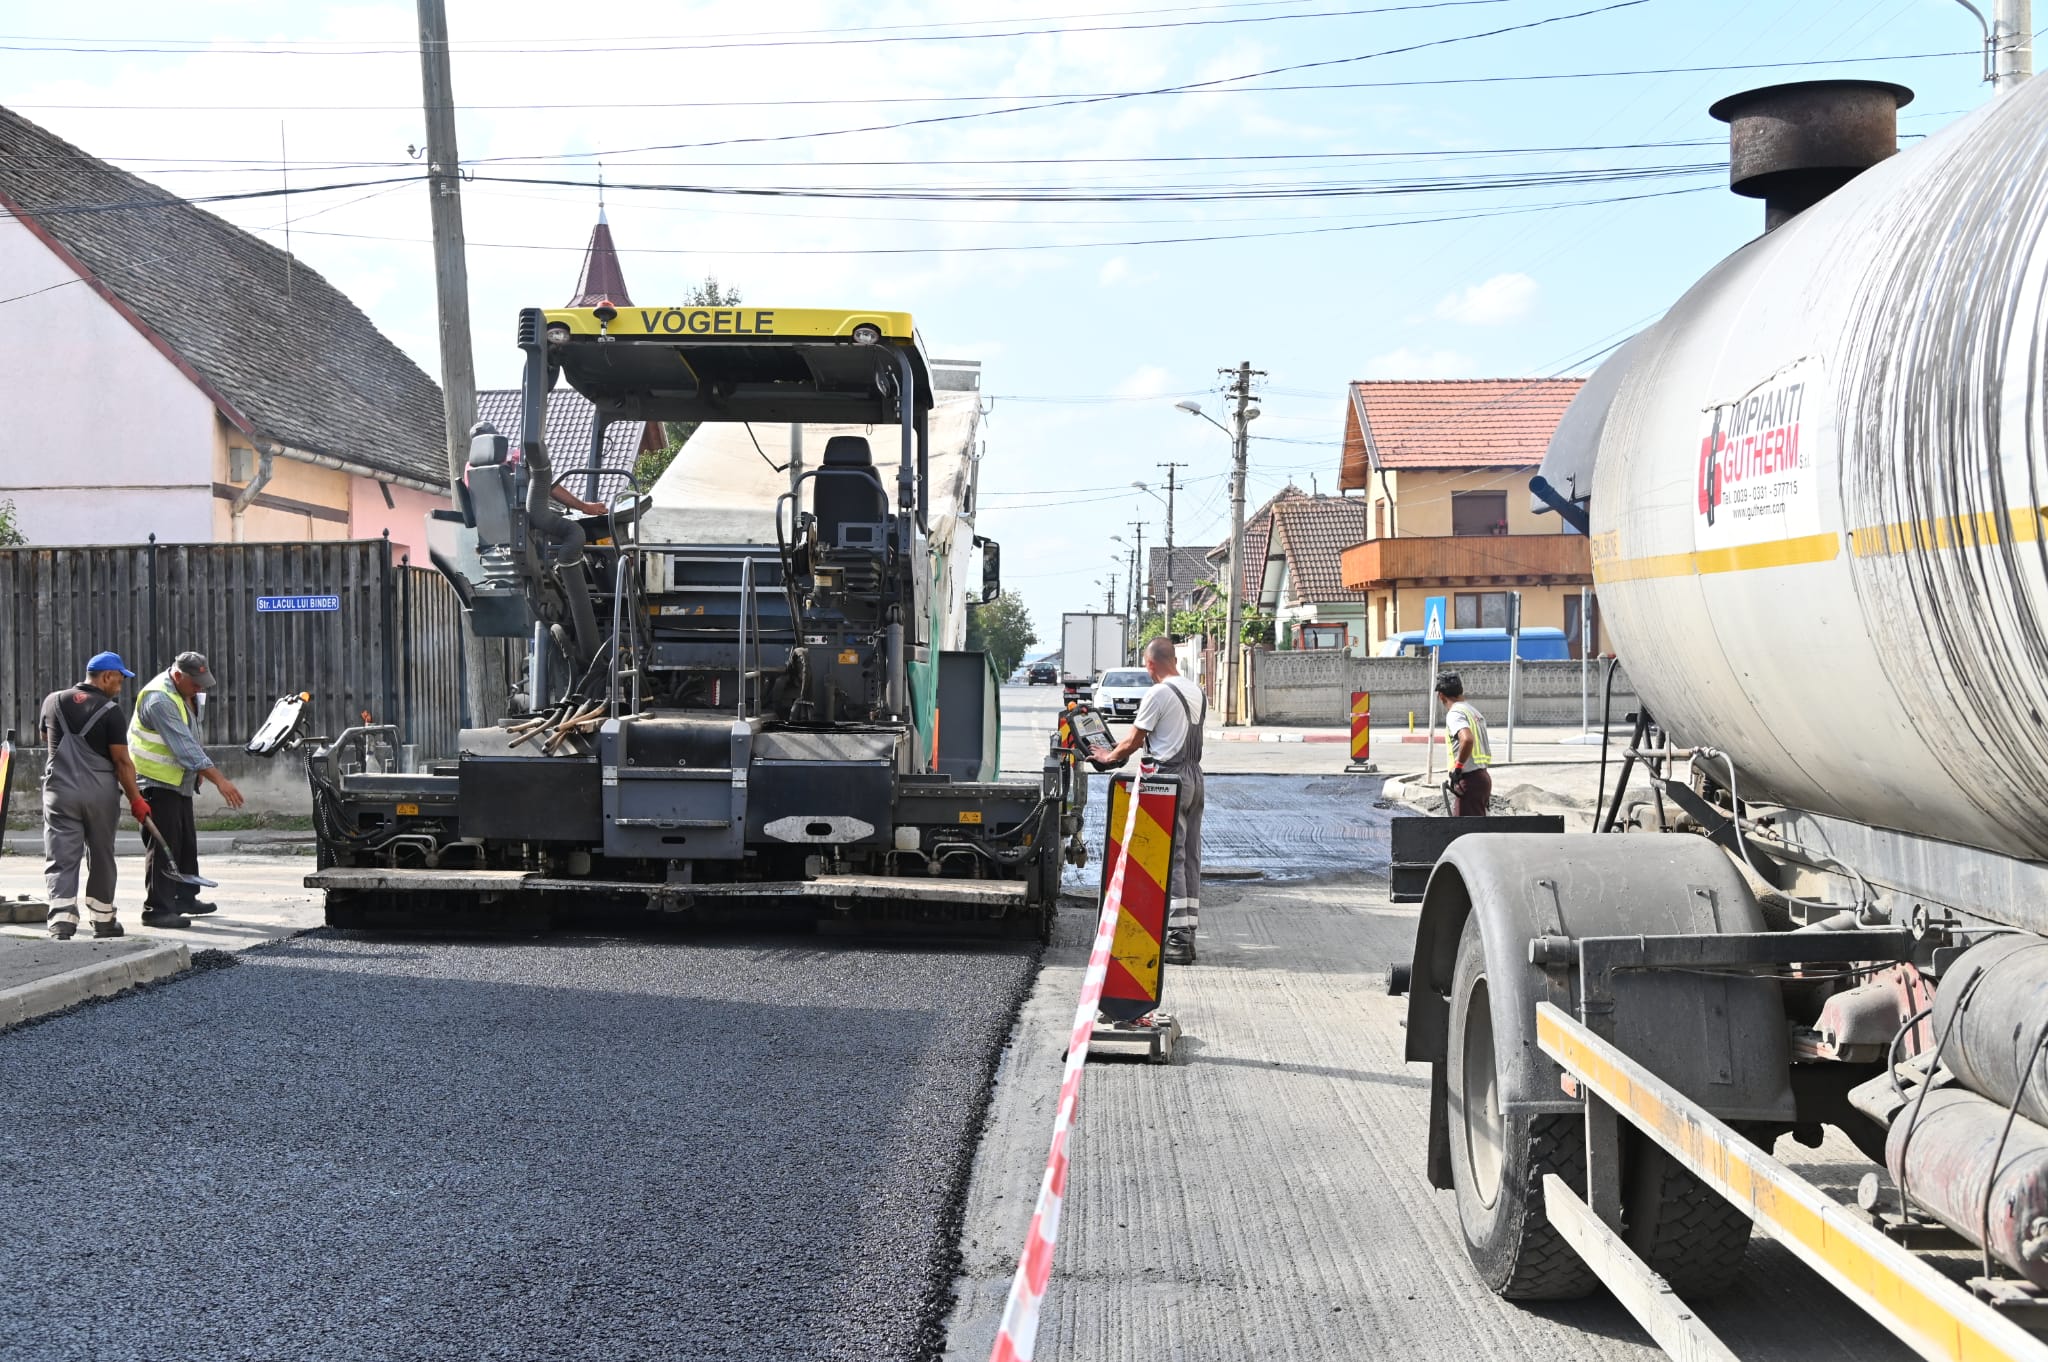 Primăria Sibiu anunță începerea reparațiilor pe străzi. Primele artere care intră în lucru